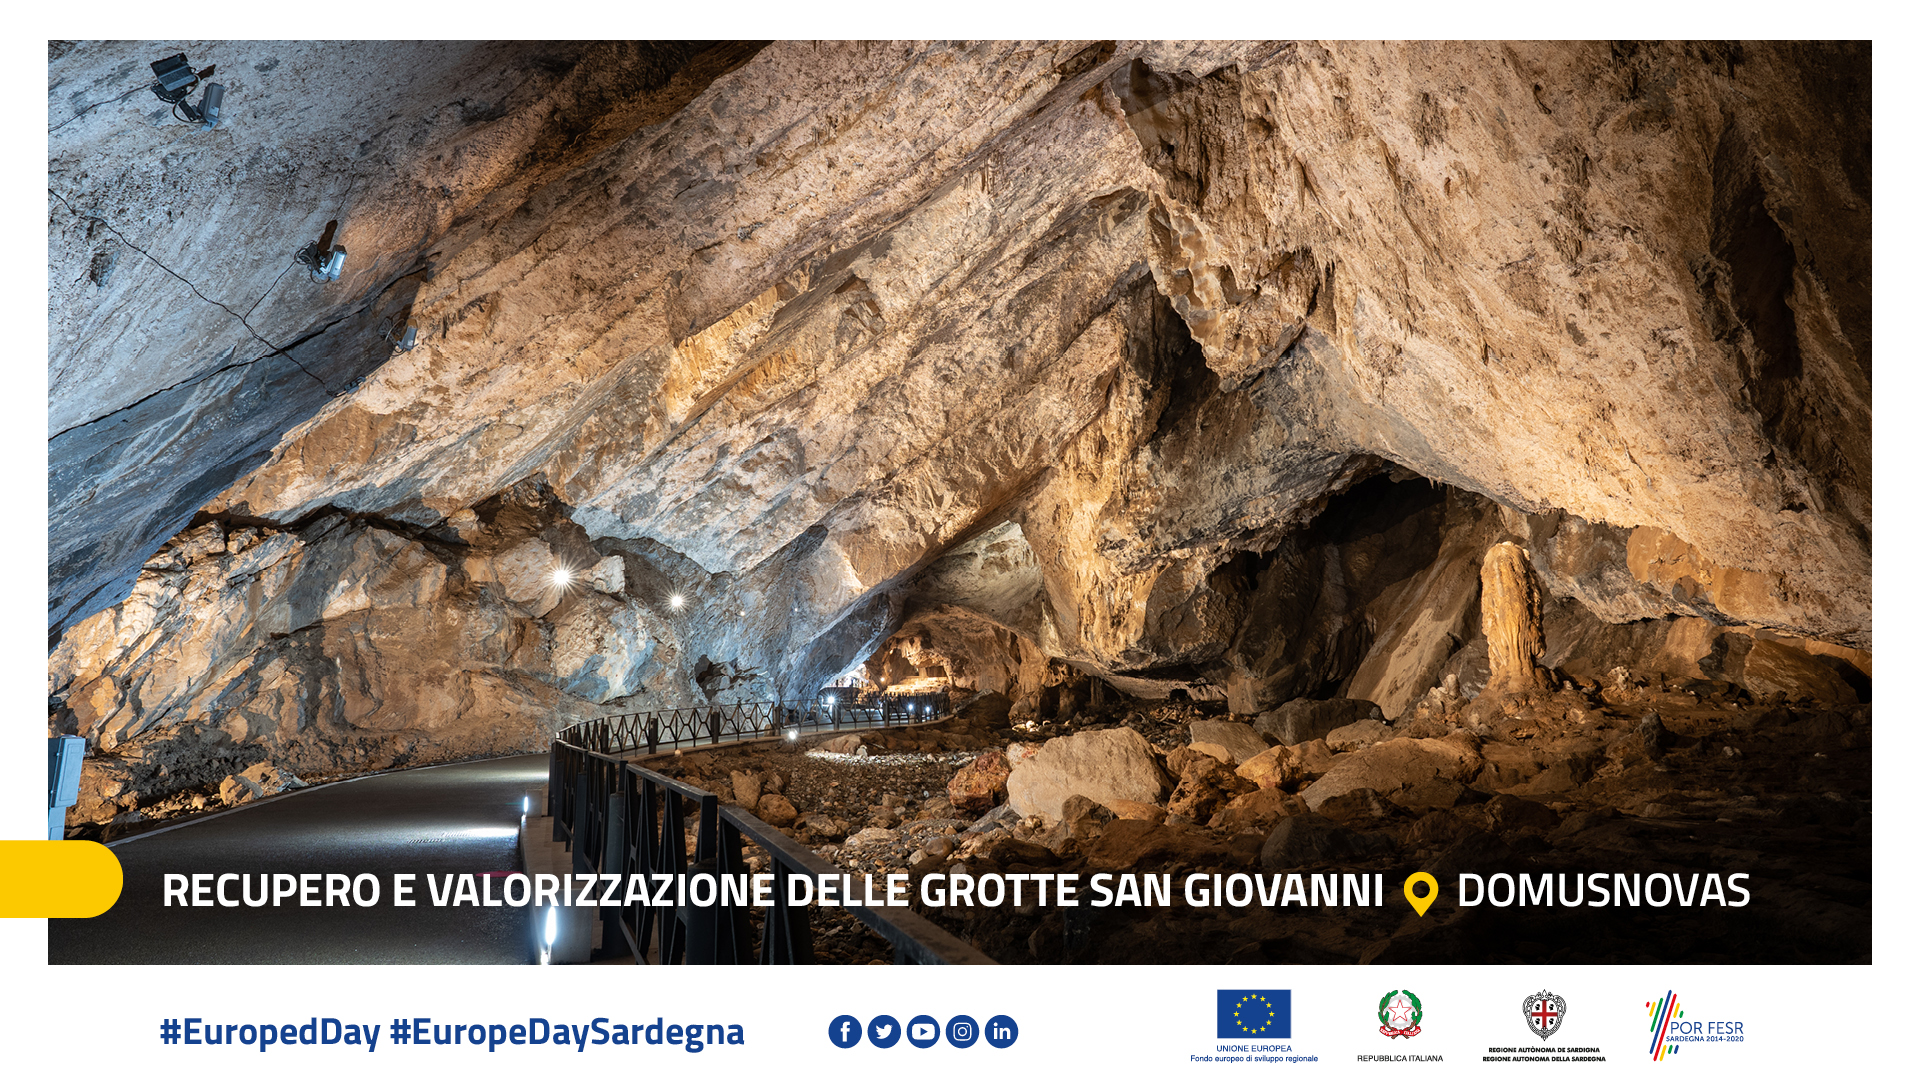 Recupero e valorizzazione delle grotte San Giovanni - Domusnovas